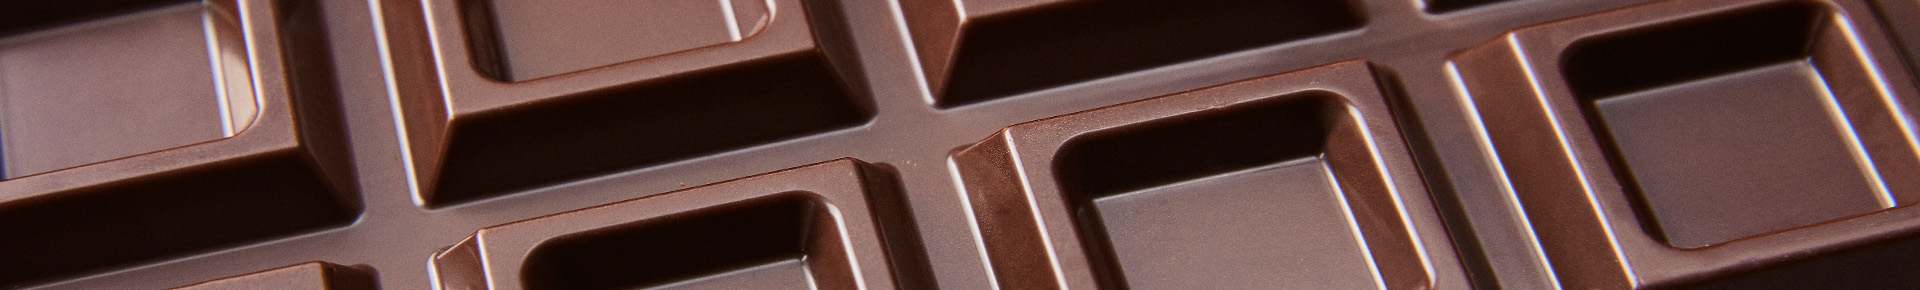 Blocco di cioccolato Perugina da 500g